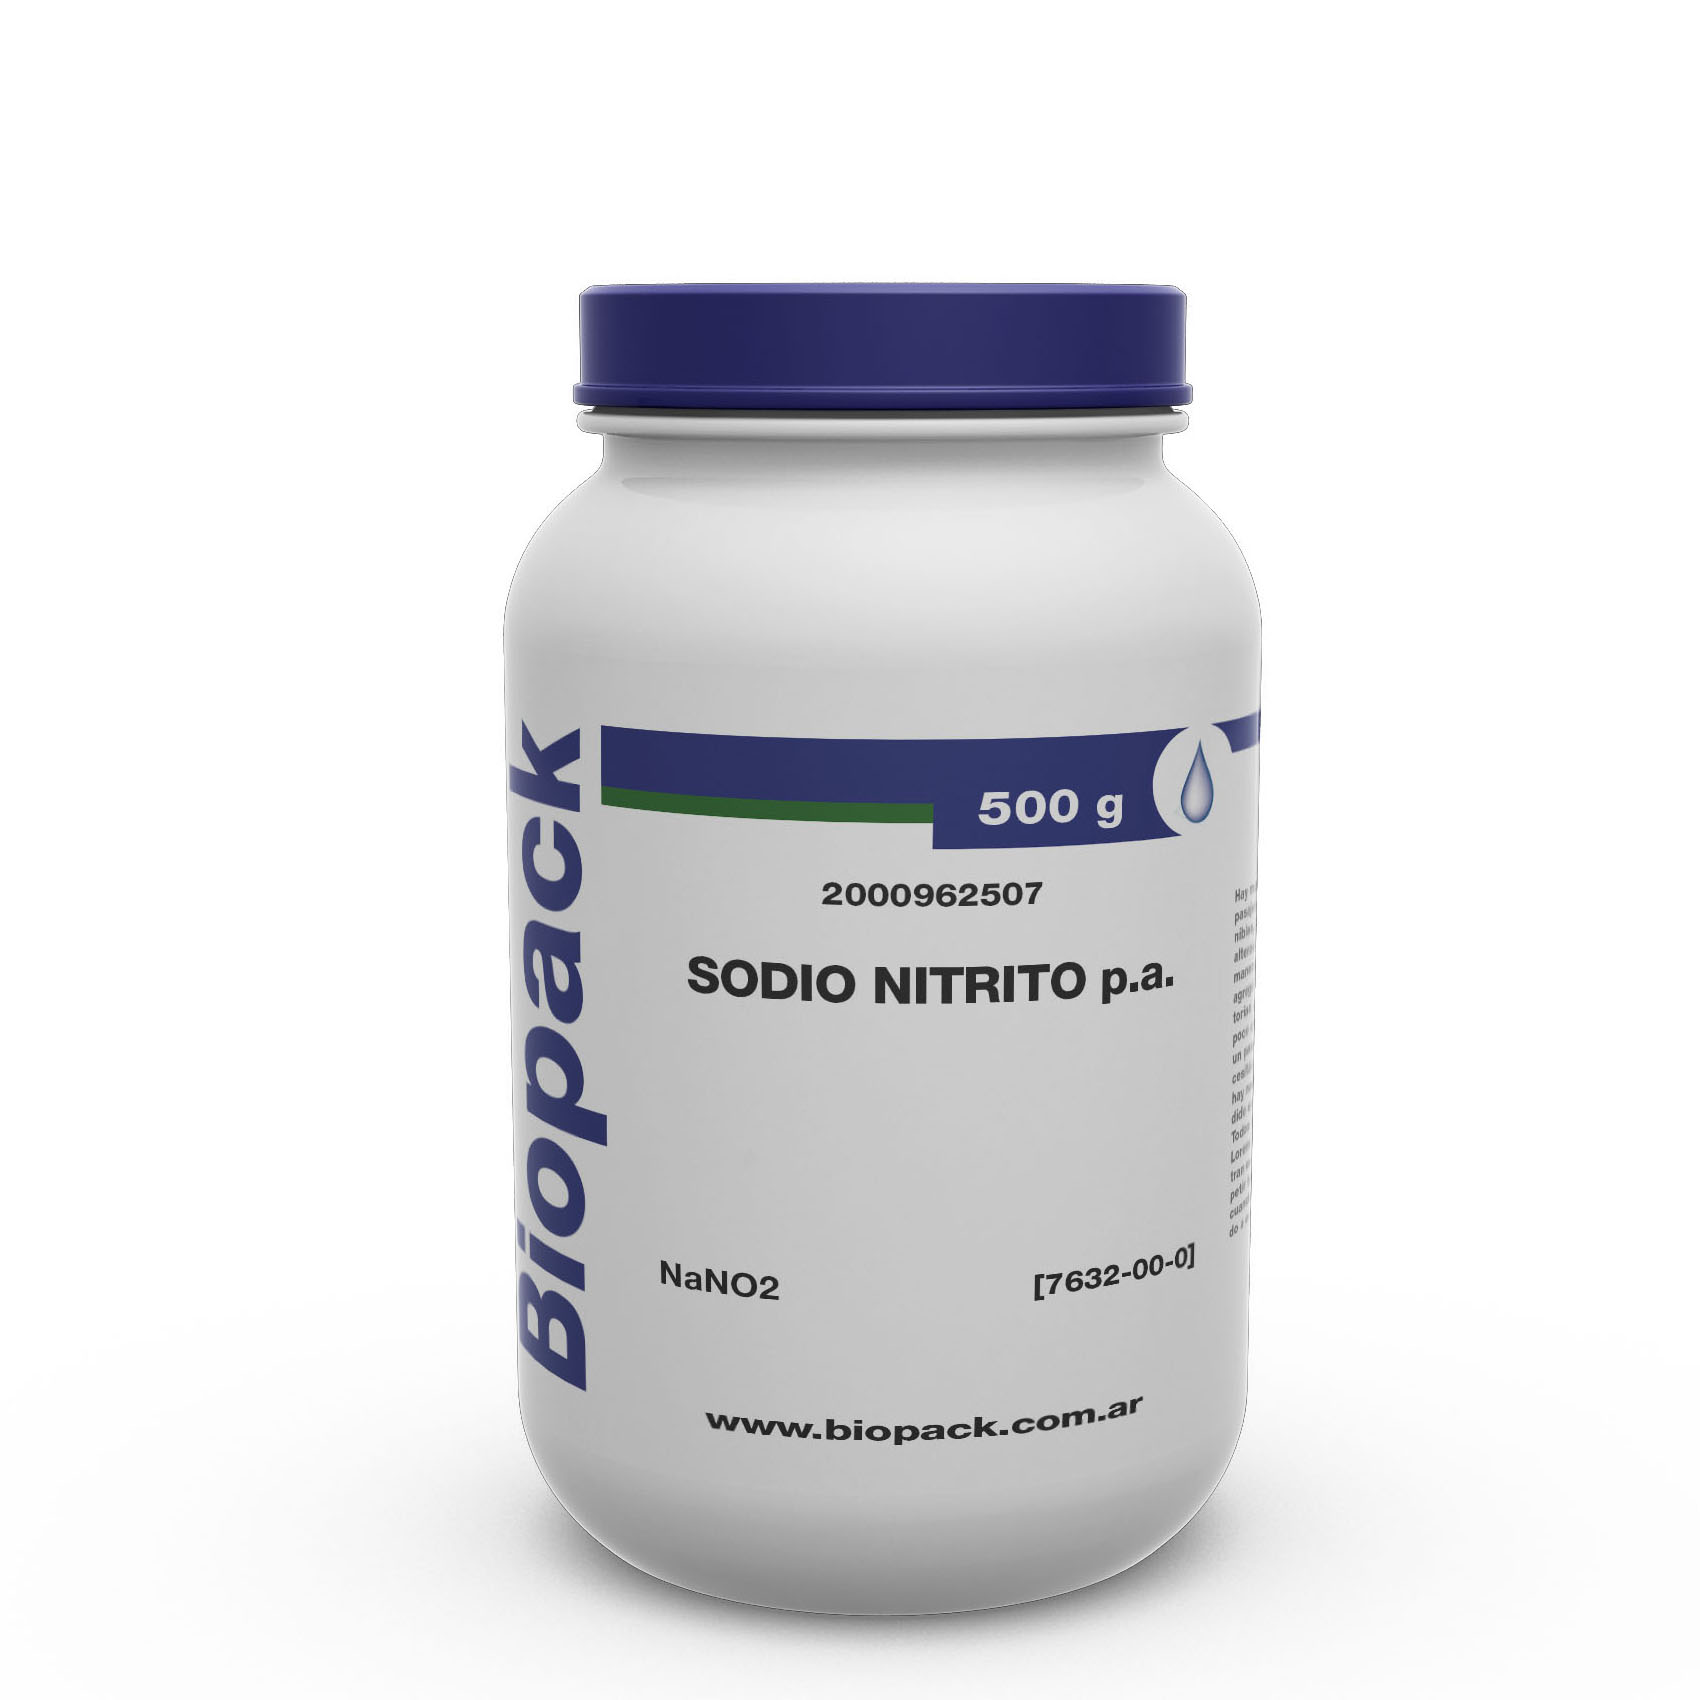 SODIO NITRITO P.A. x 500 g, BIOPACK